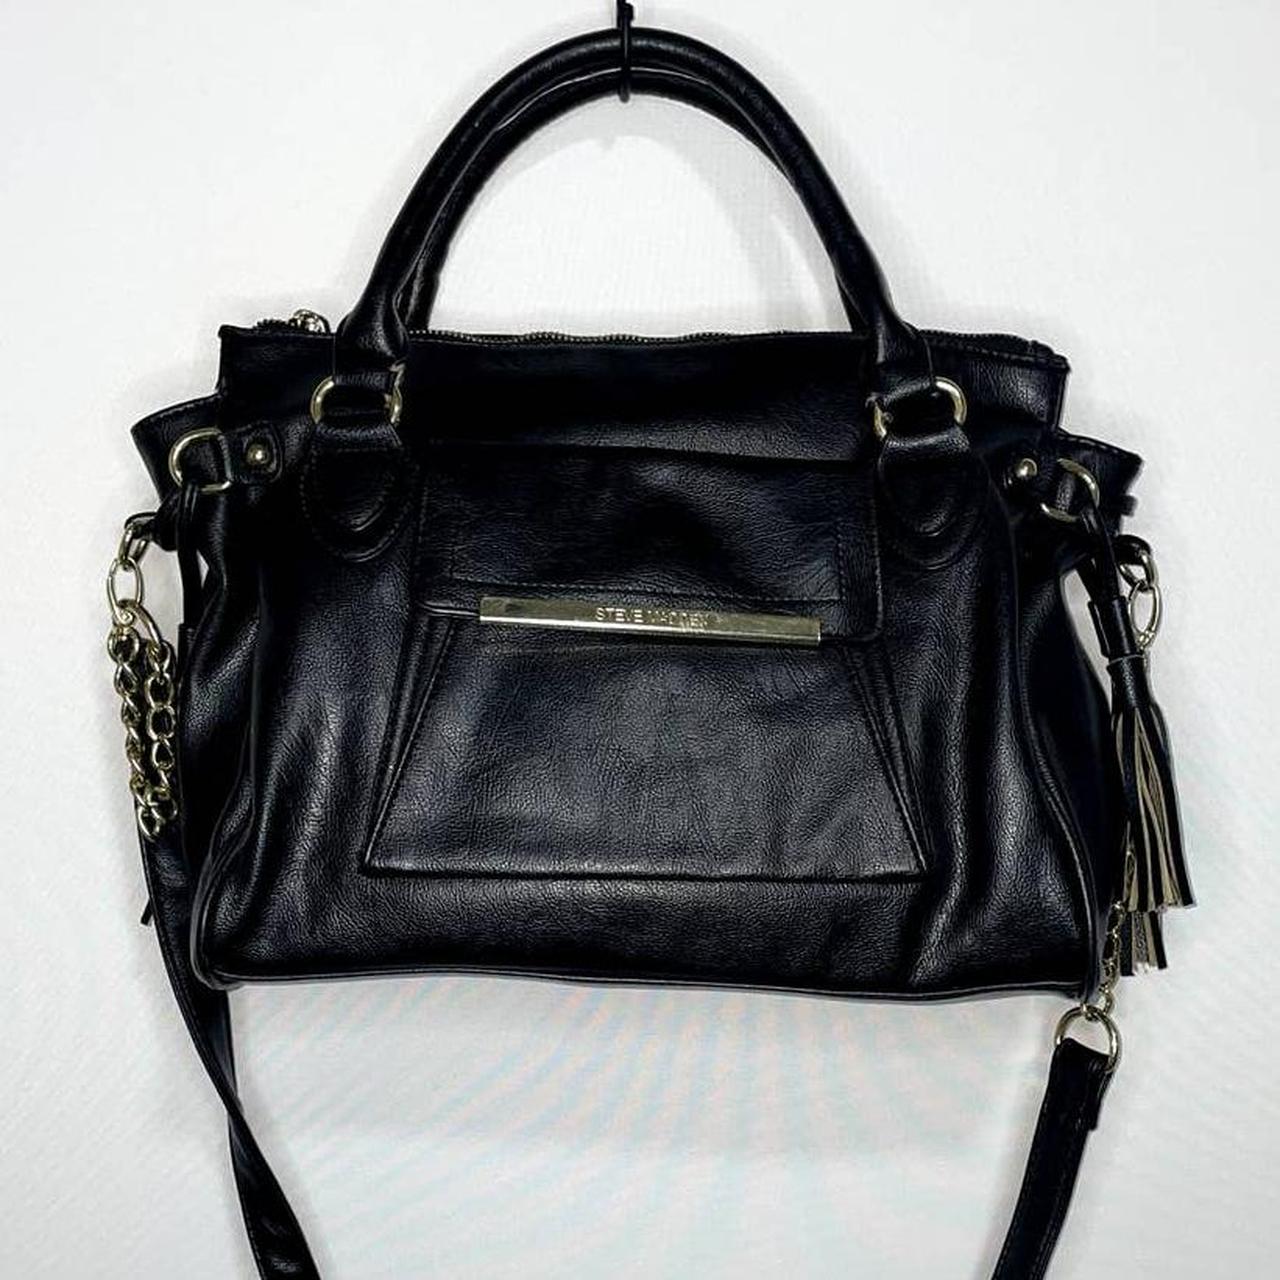 JKNAKN Replacement Adjustable Leather Shoulder Strap with Metal Swivel  Hooks for Crossbody Bag Briefcase Messenger Bag Shoulder Bag Purse Making  -2 cm Width (Black)